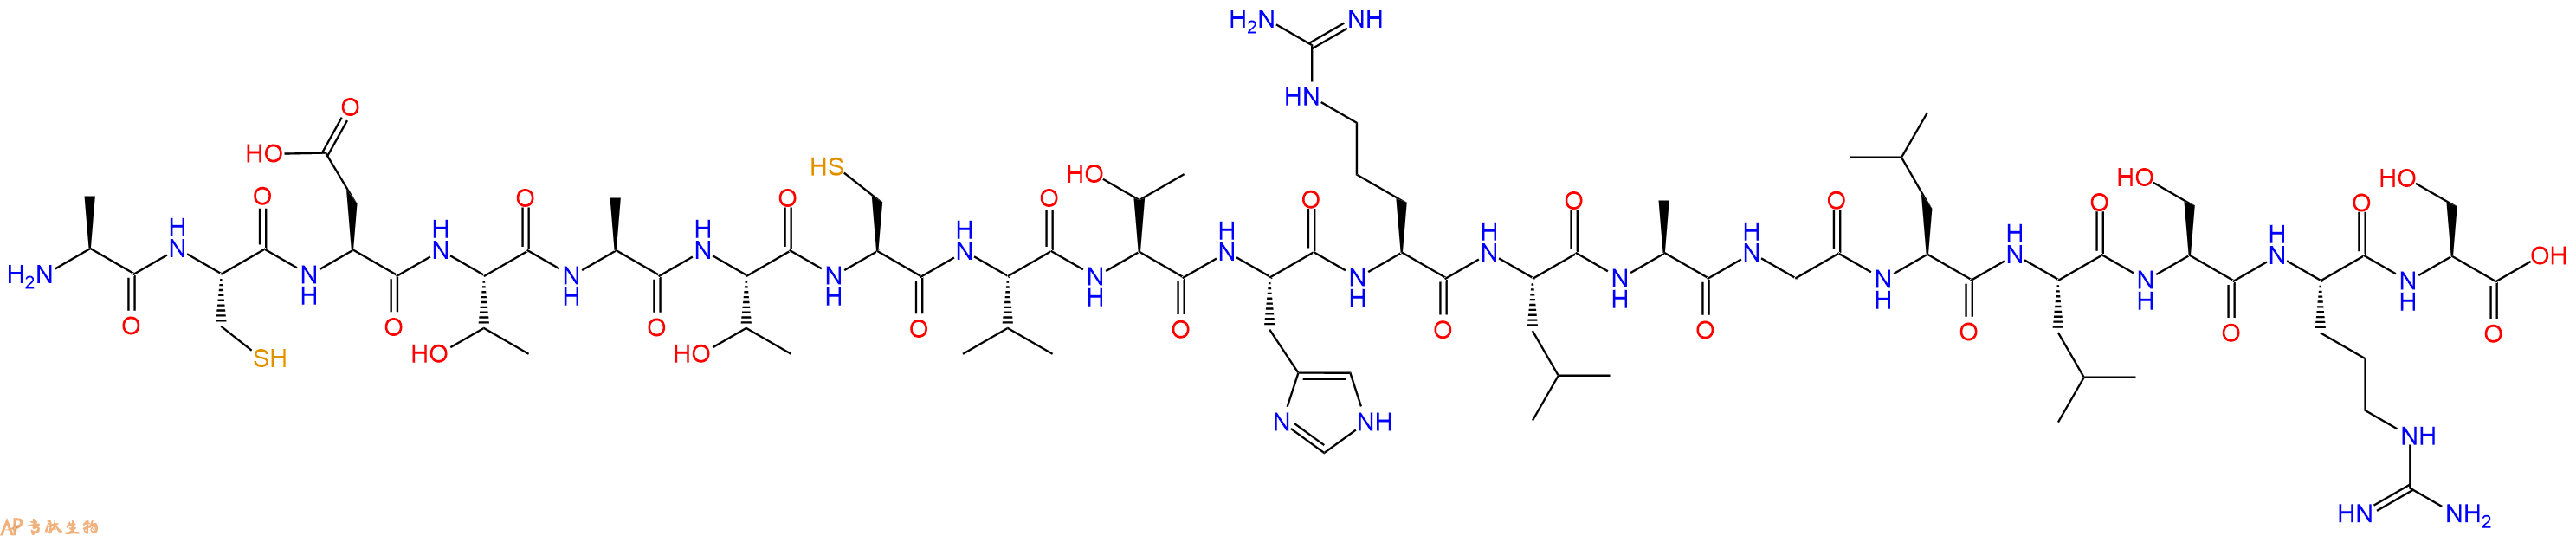 专肽生物产品CalcitoninGeneRelated Peptide (1-19), human